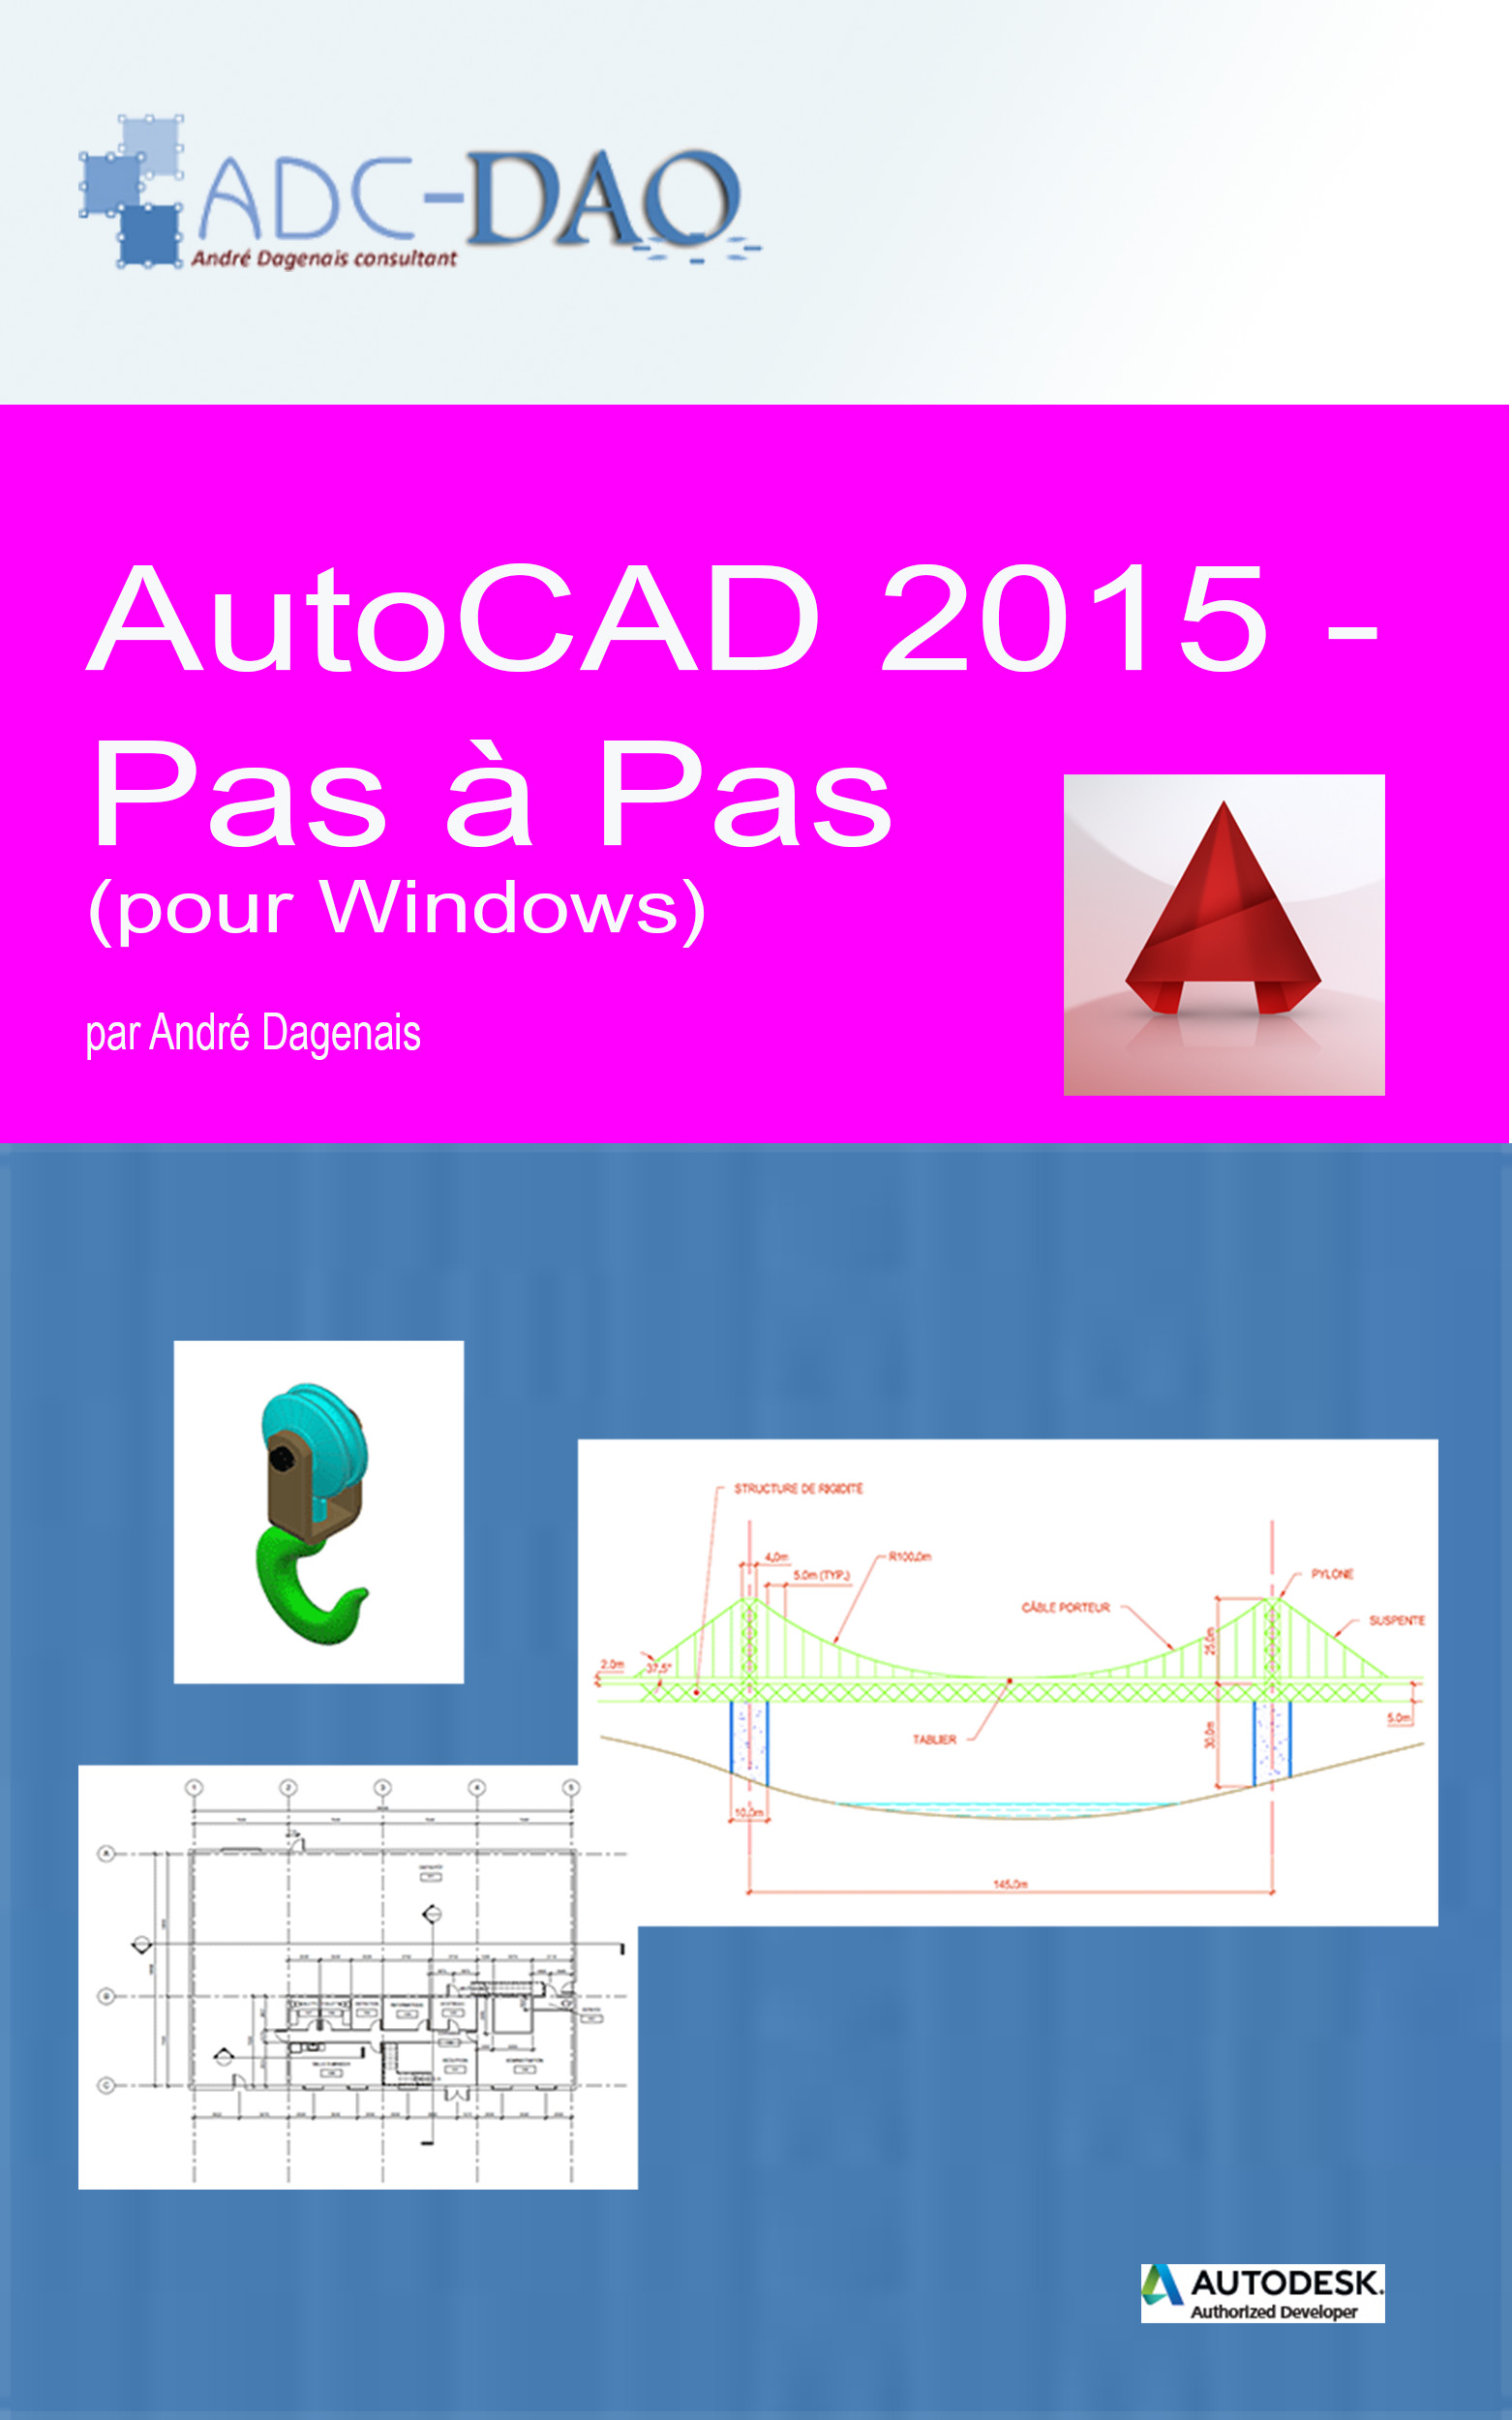 AutoCAD 2015 - Pas à pas (Couverture)